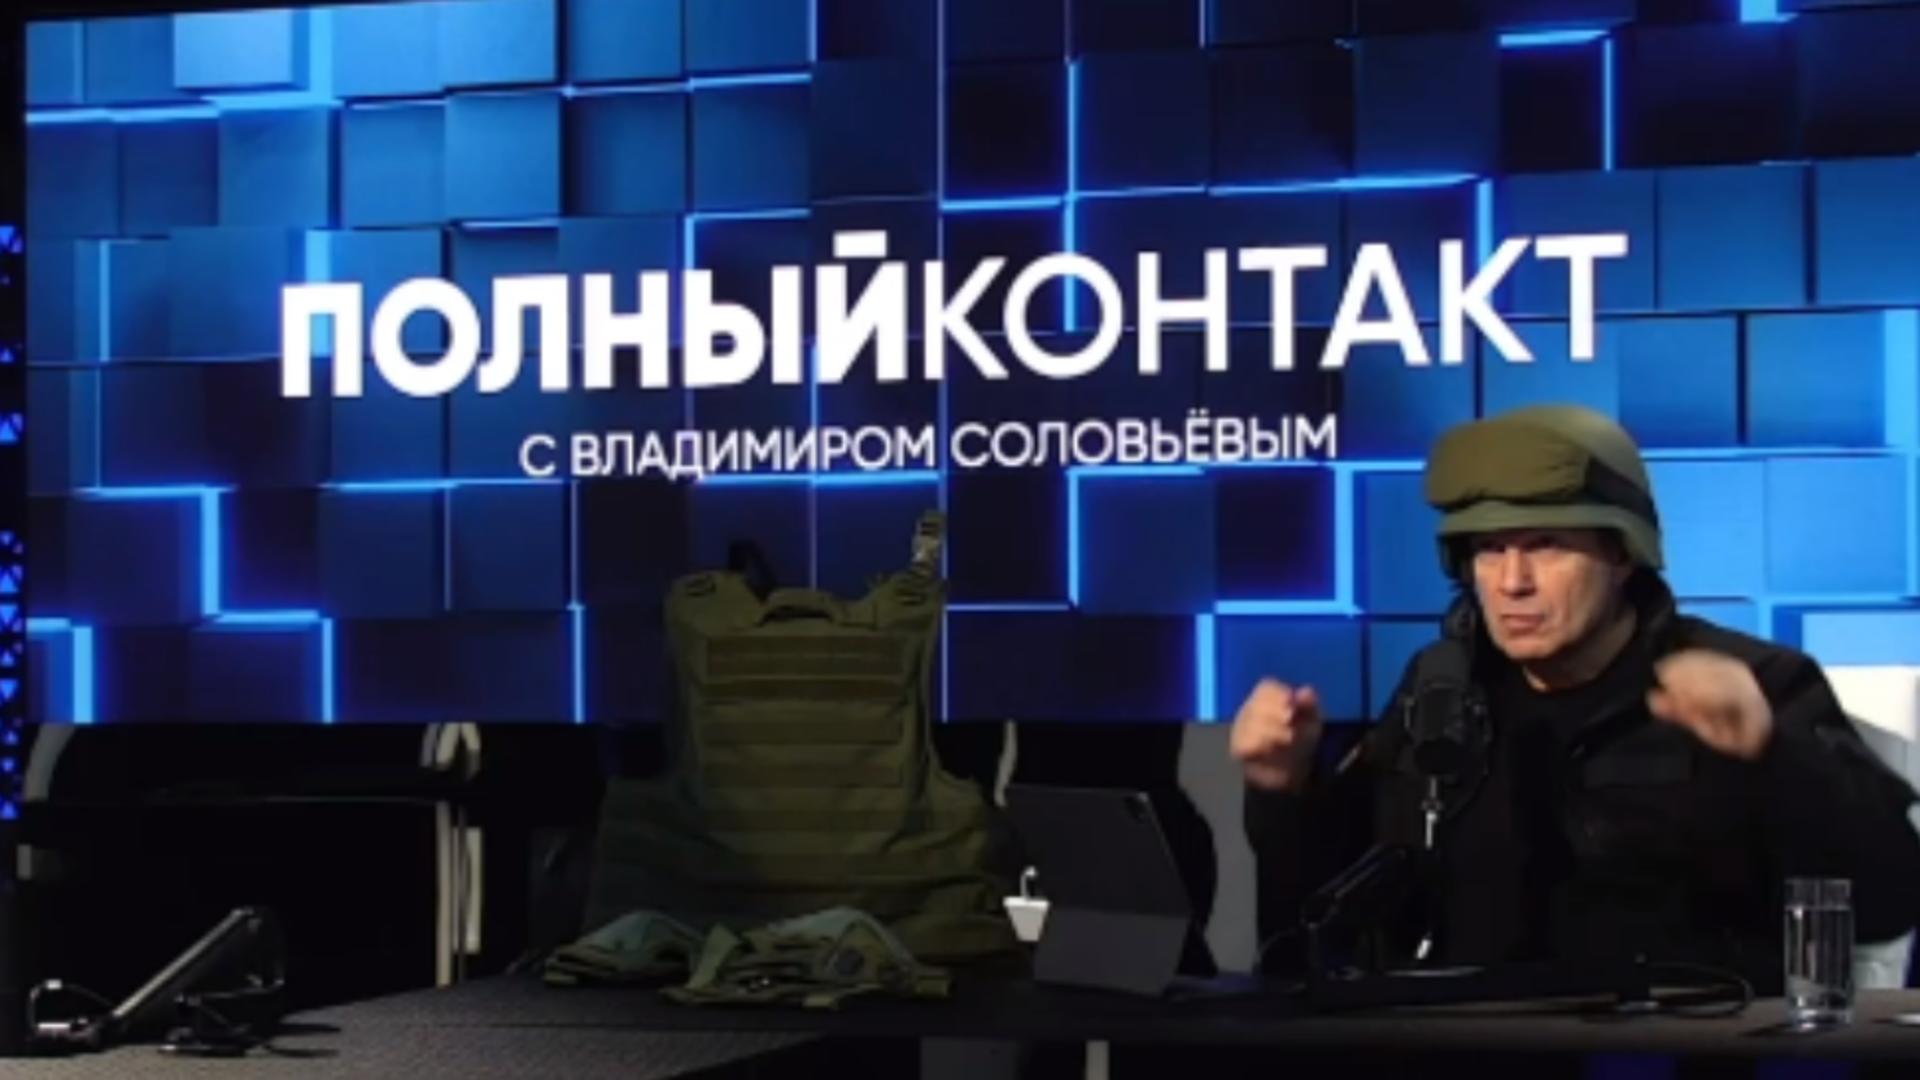 Propagandistul lui Putin, supărat foc pe recruții ruși - Cu casca pe cap, Soloviov laudă echipamentul pentru războiul din Ucraina